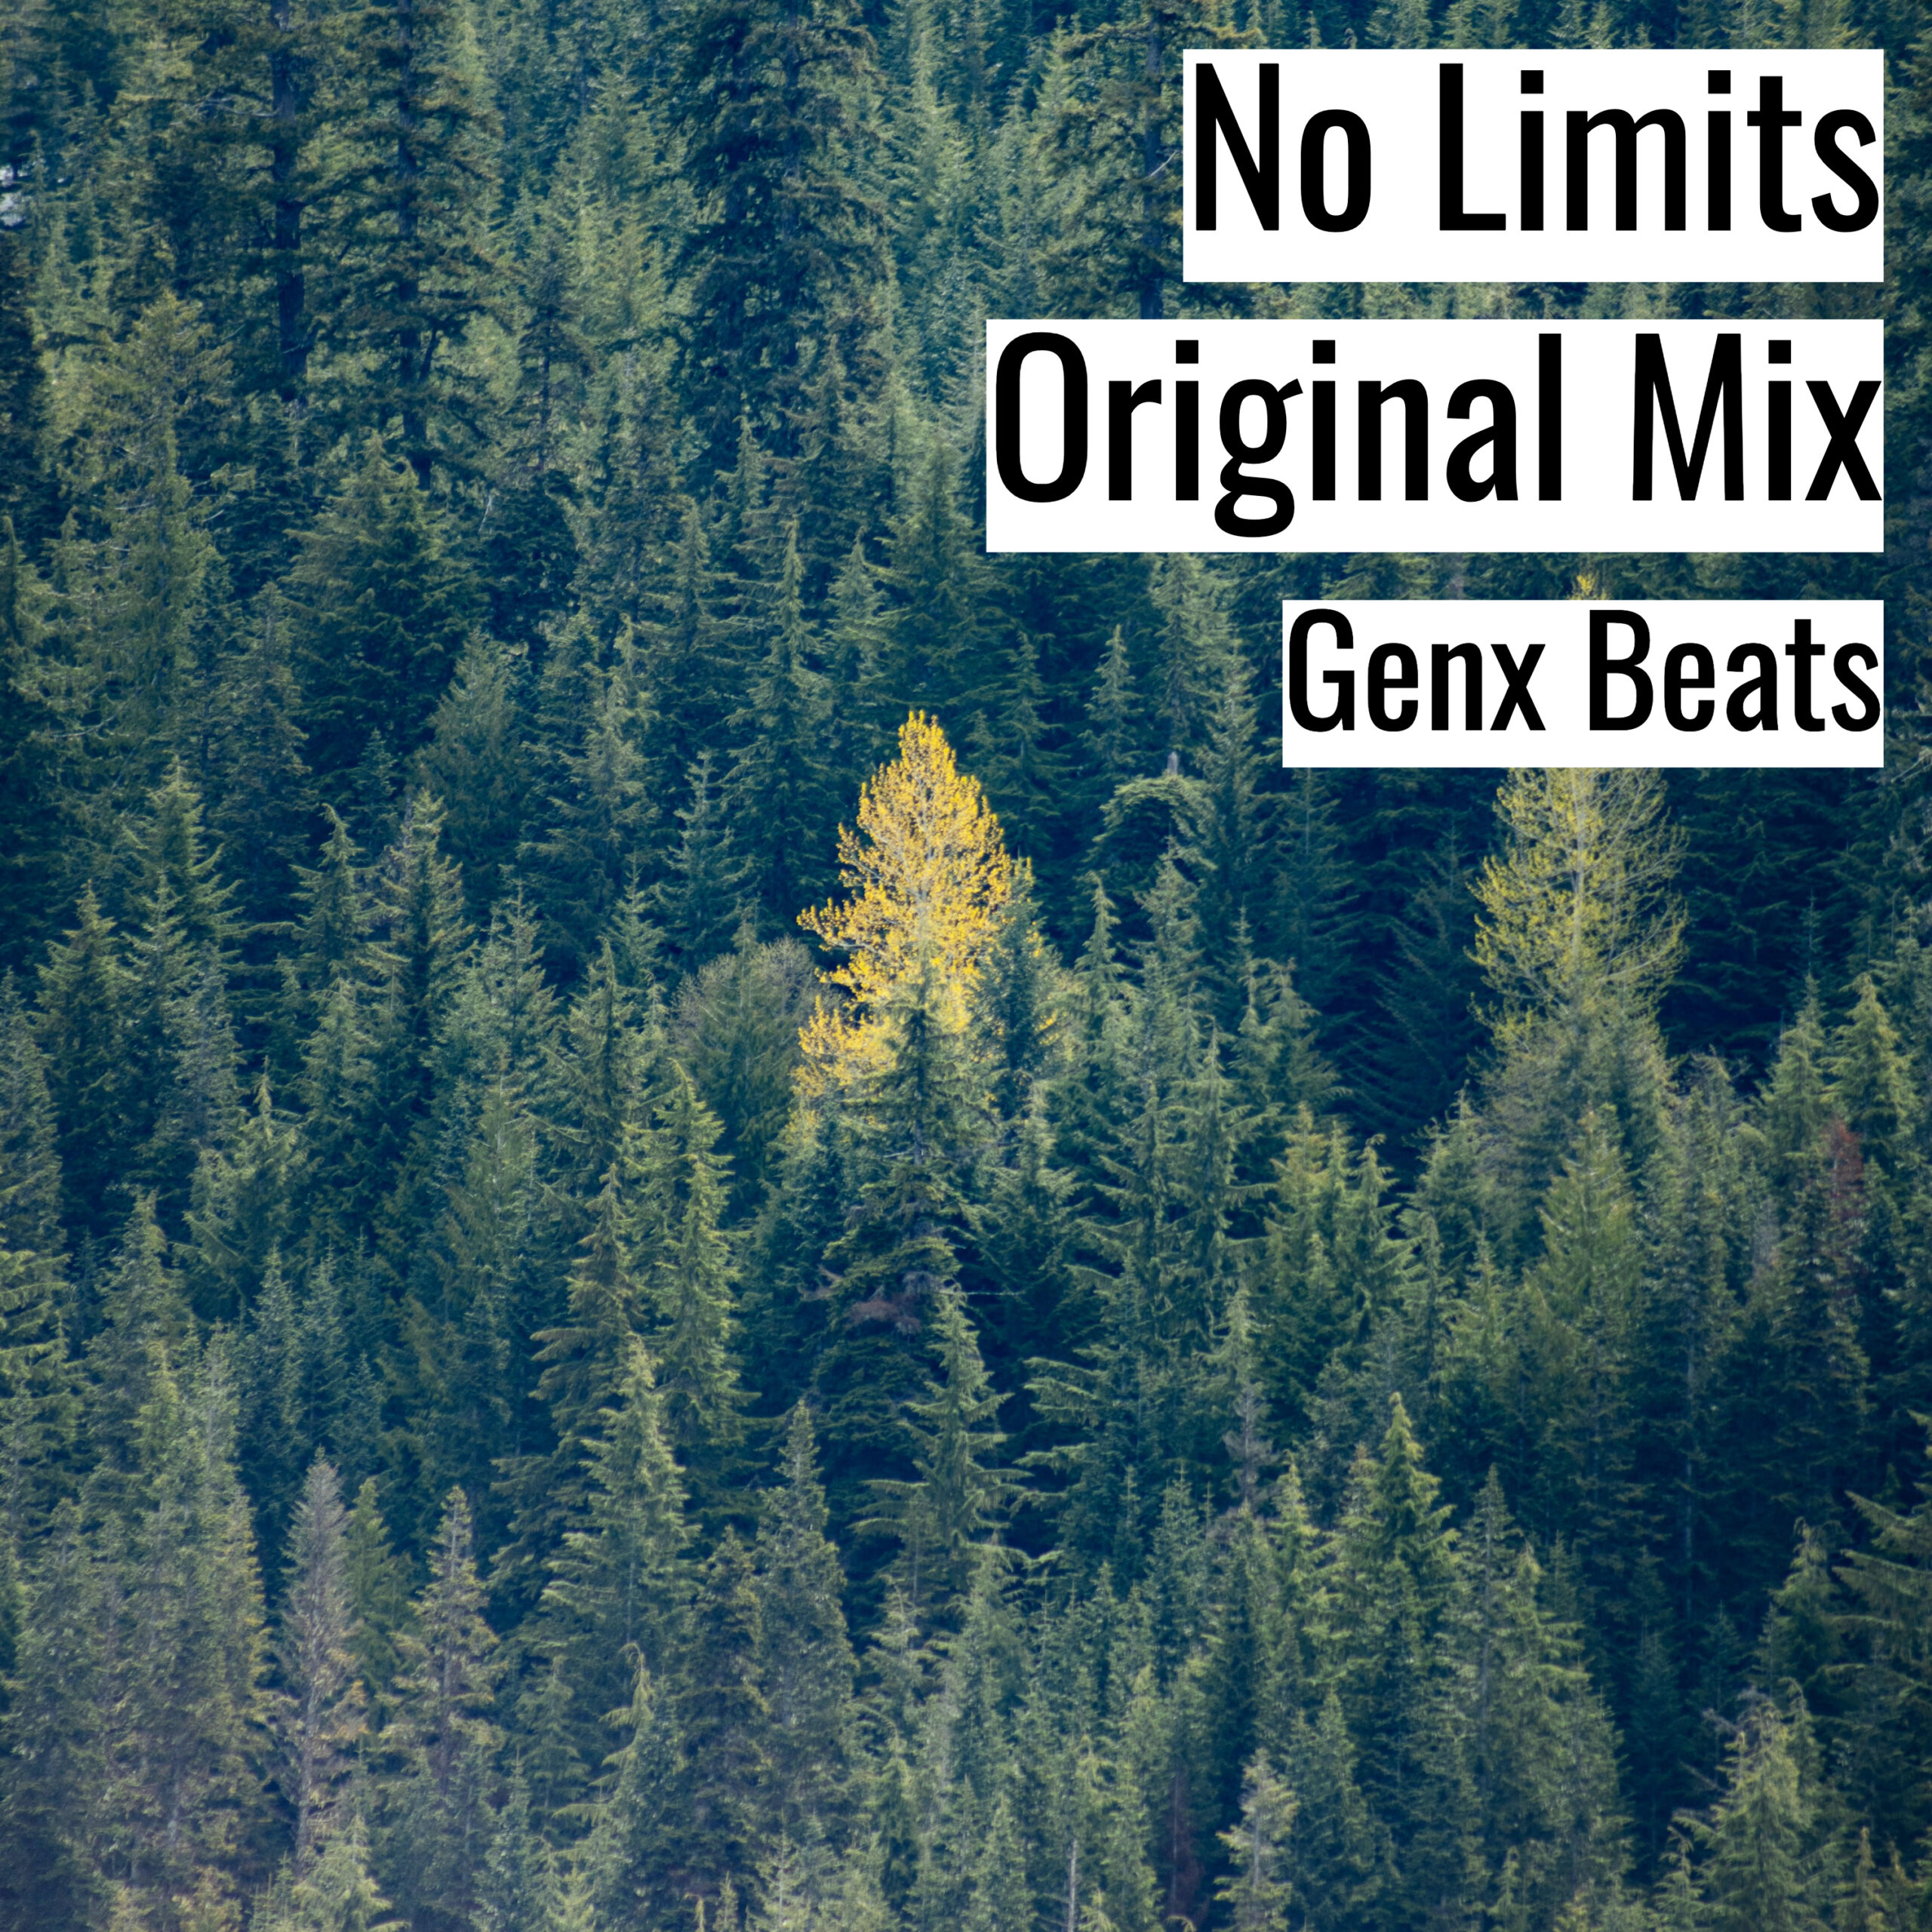 No Limits Original Mix scaled